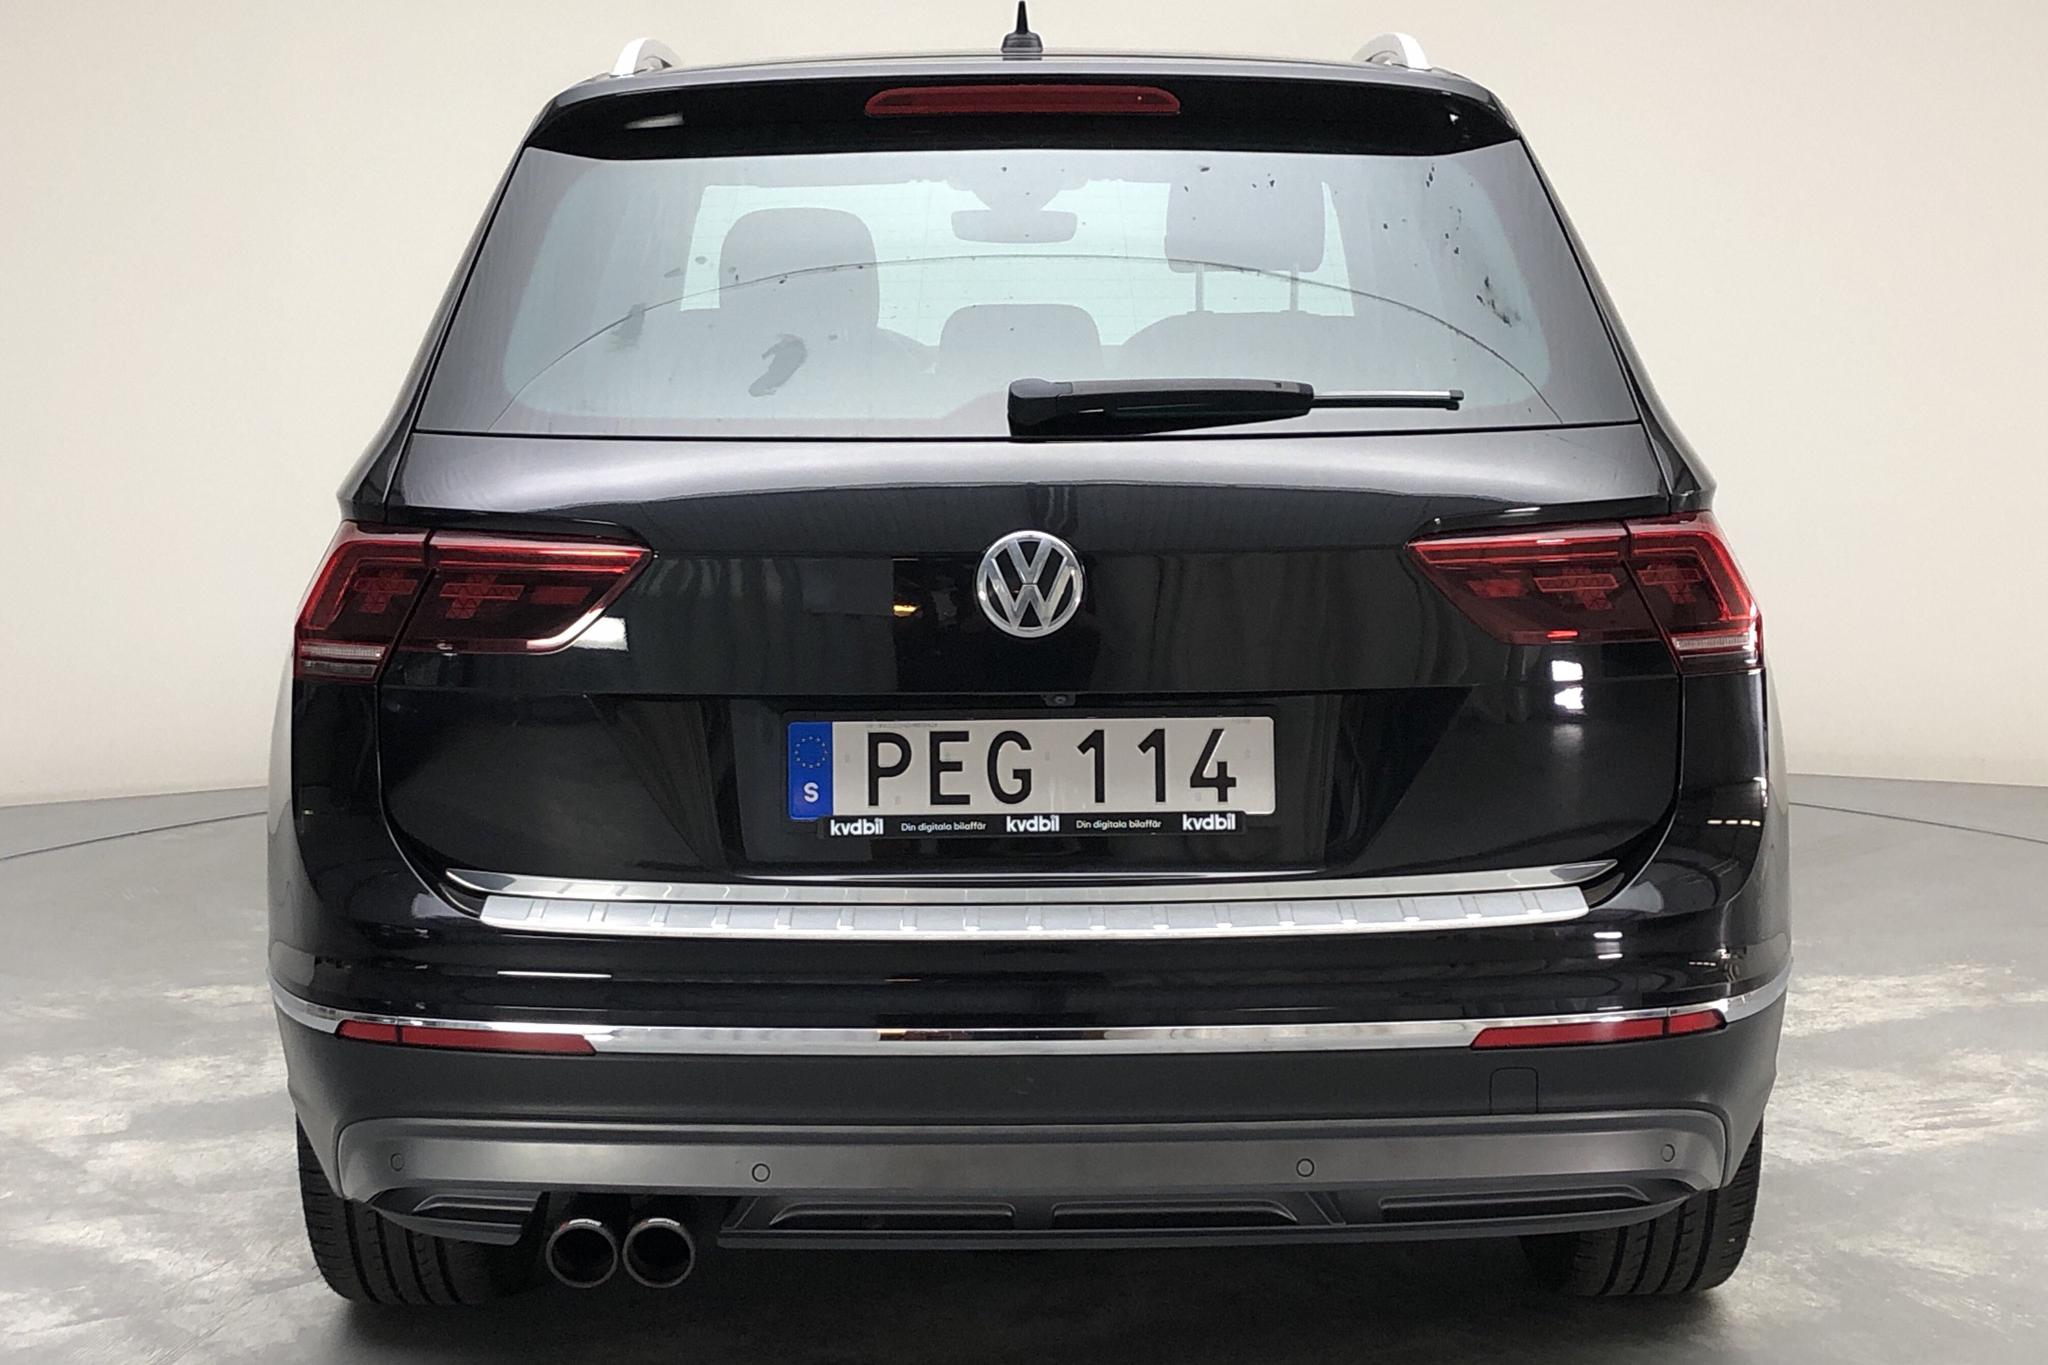 VW Tiguan 2.0 TDI 4MOTION (190hk) - 118 700 km - Automatic - black - 2017